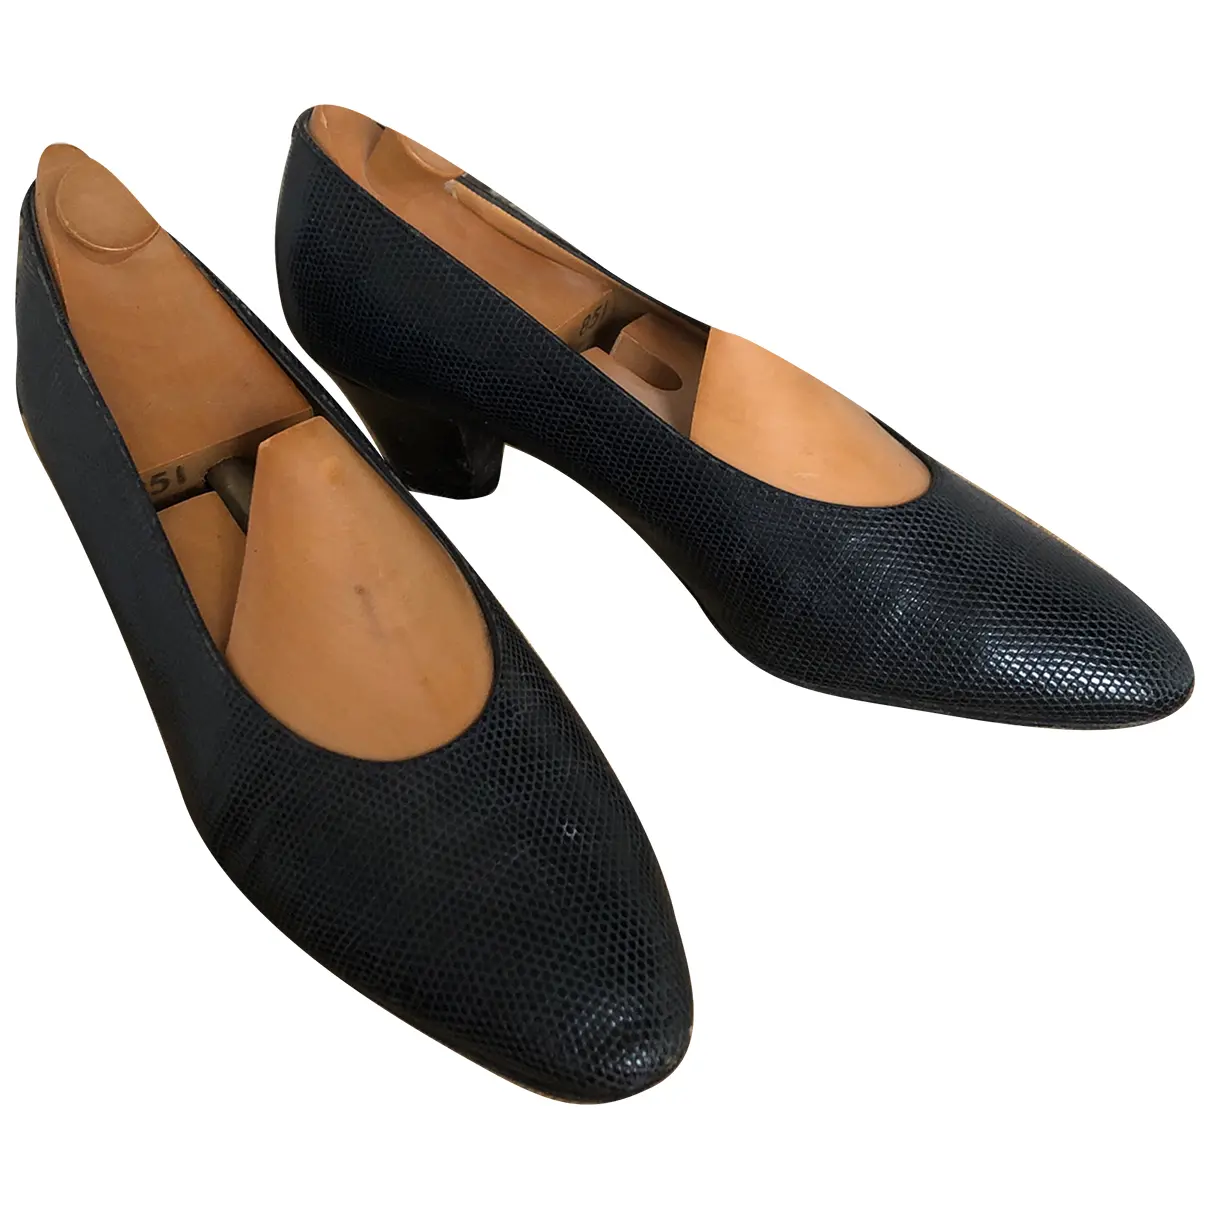 Leather heels Aubercy